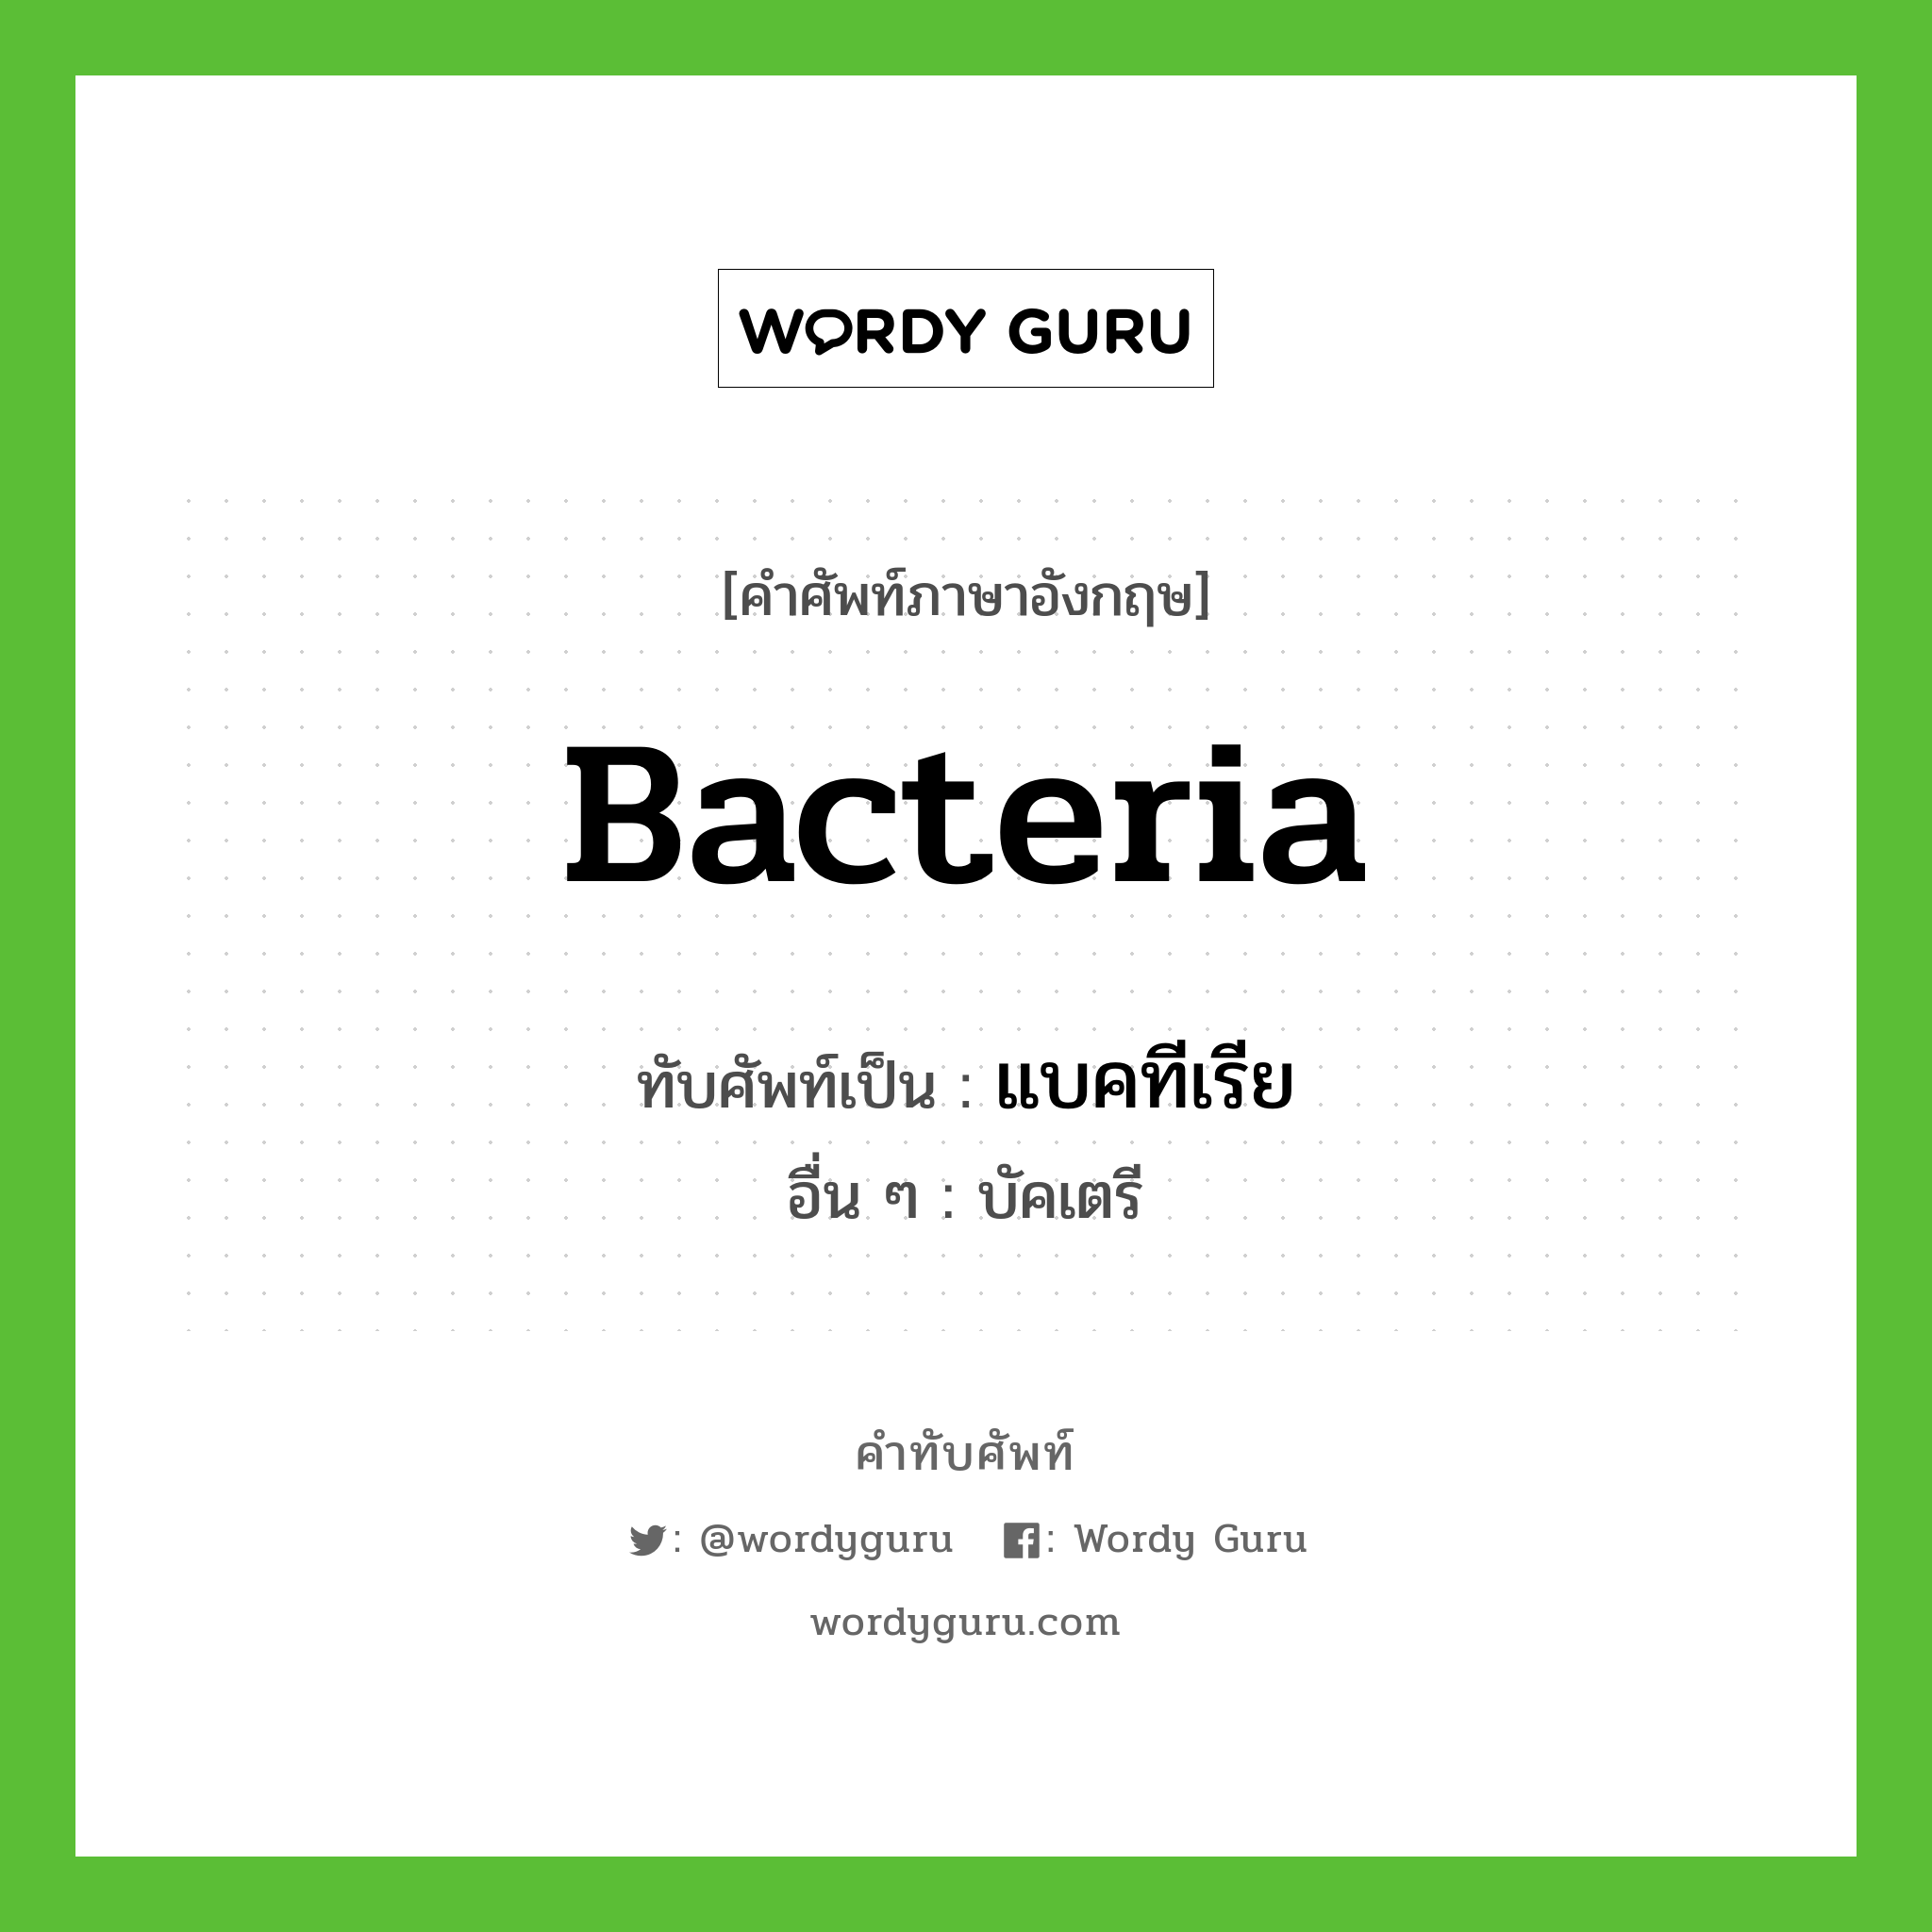 bacteria เขียนเป็นคำไทยว่าอะไร?, คำศัพท์ภาษาอังกฤษ bacteria ทับศัพท์เป็น แบคทีเรีย อื่น ๆ บัคเตรี